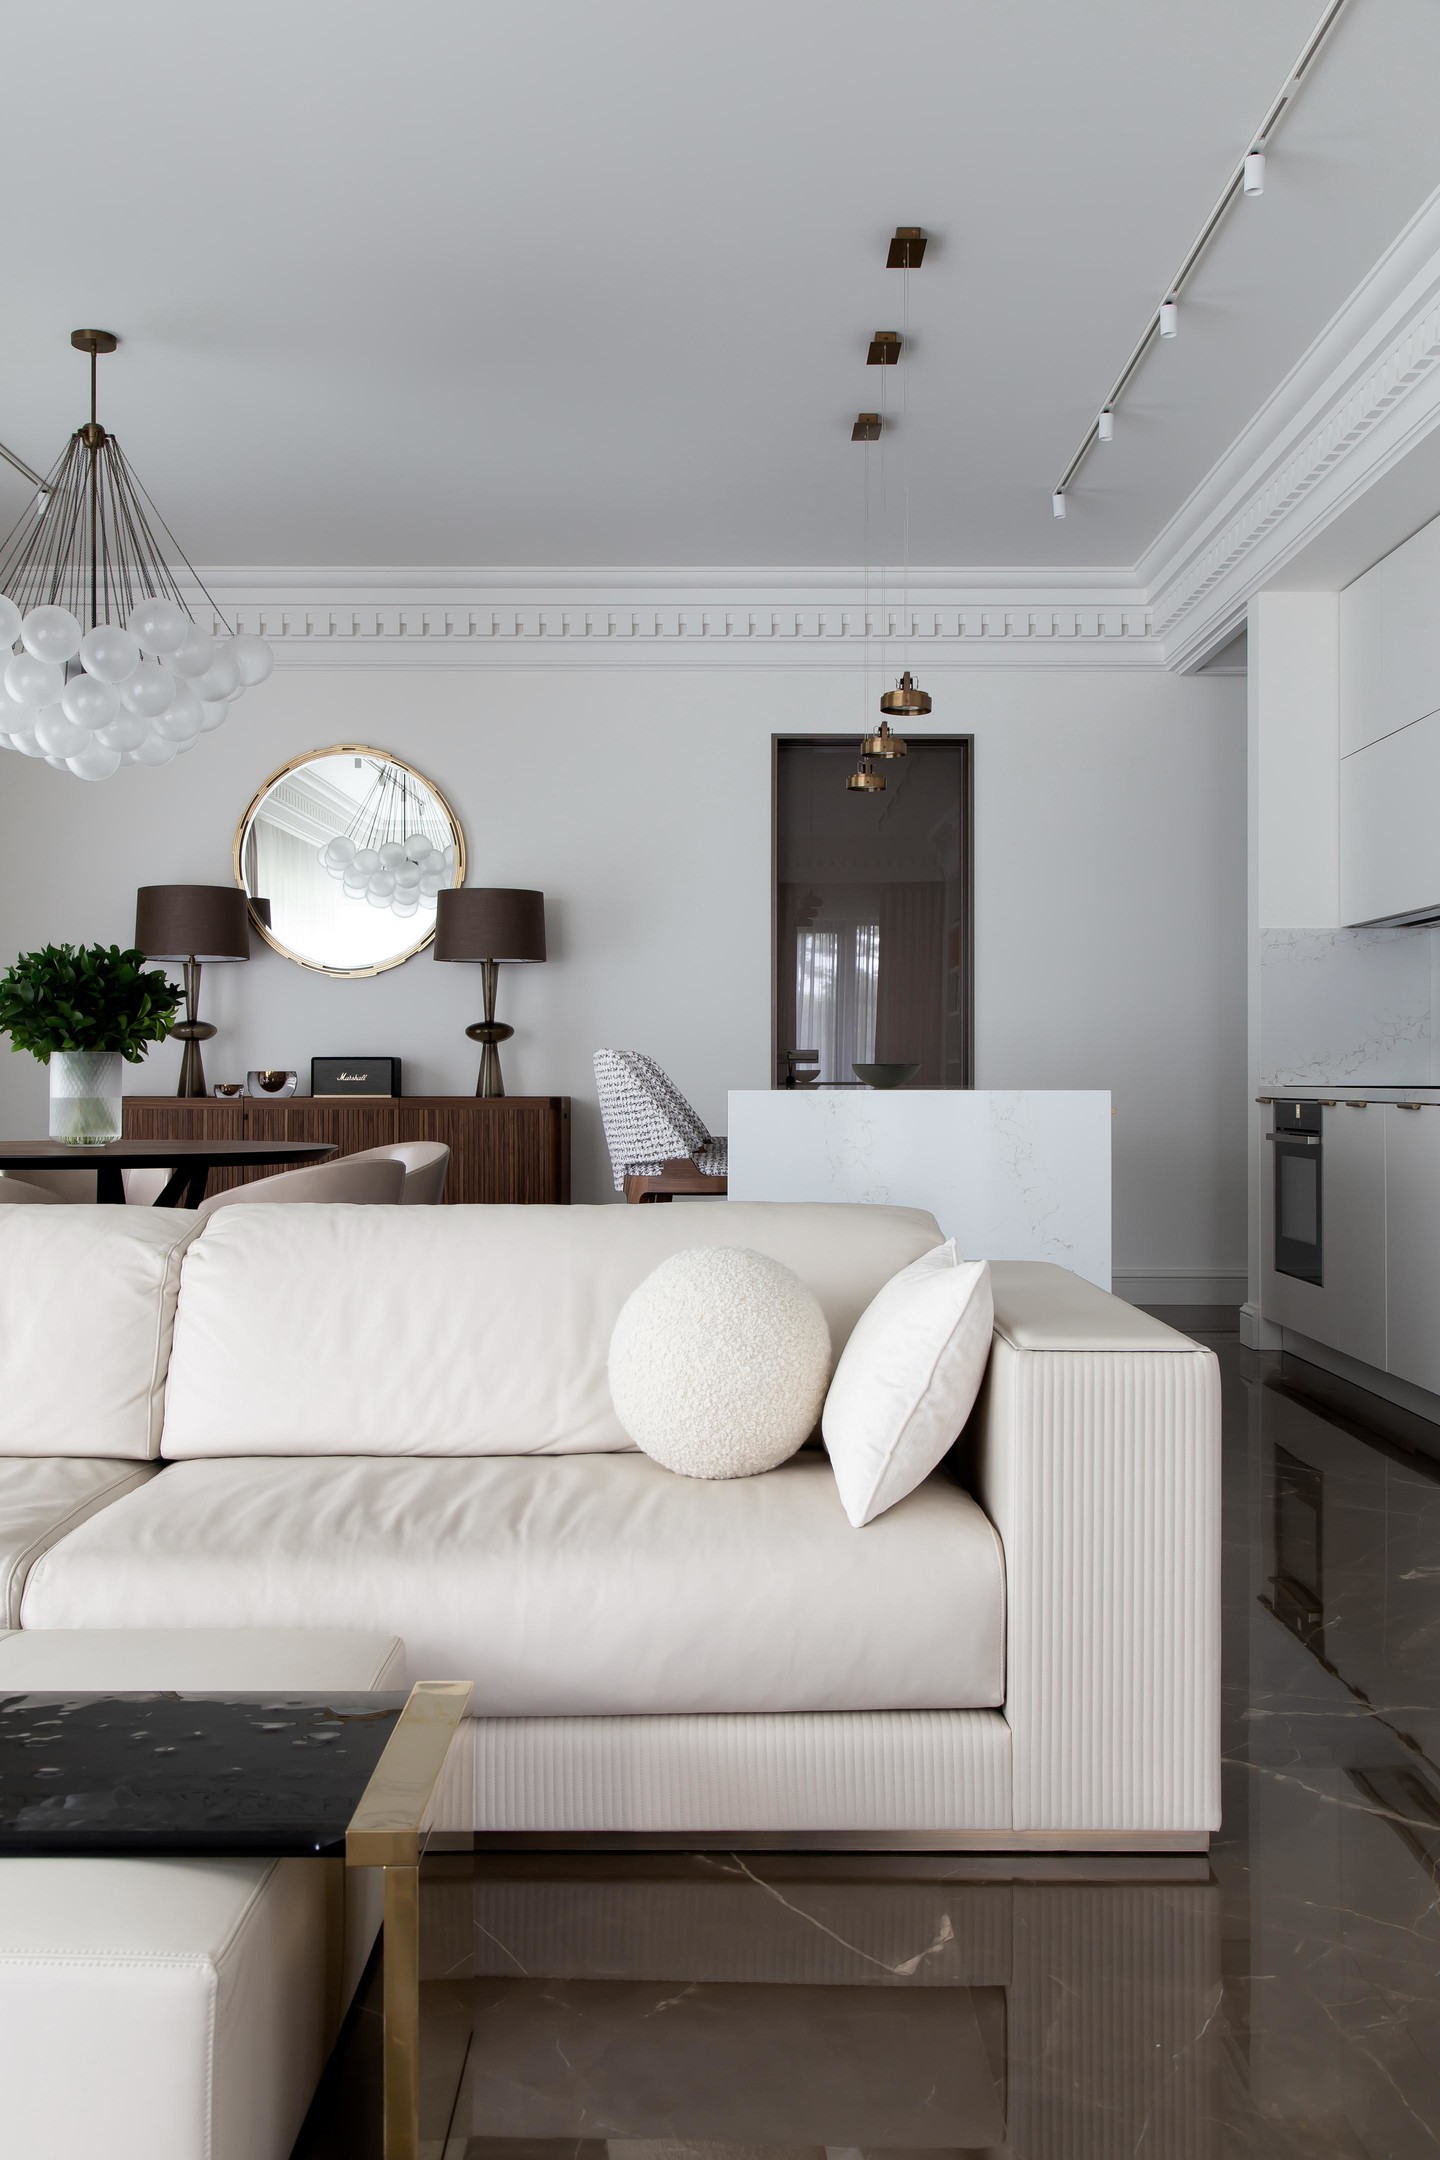 NTK nội thất đã lựa chọn đá cẩm thạch có màu nâu để lát sàn, kết nối phòng khách và cả khu vực nấu nướng - ăn uống phía sau. Nhờ vậy mà chiếc ghế sofa màu trắng kem bỗng trở nên nổi bật dù chỉ là tone màu đơn sắc.